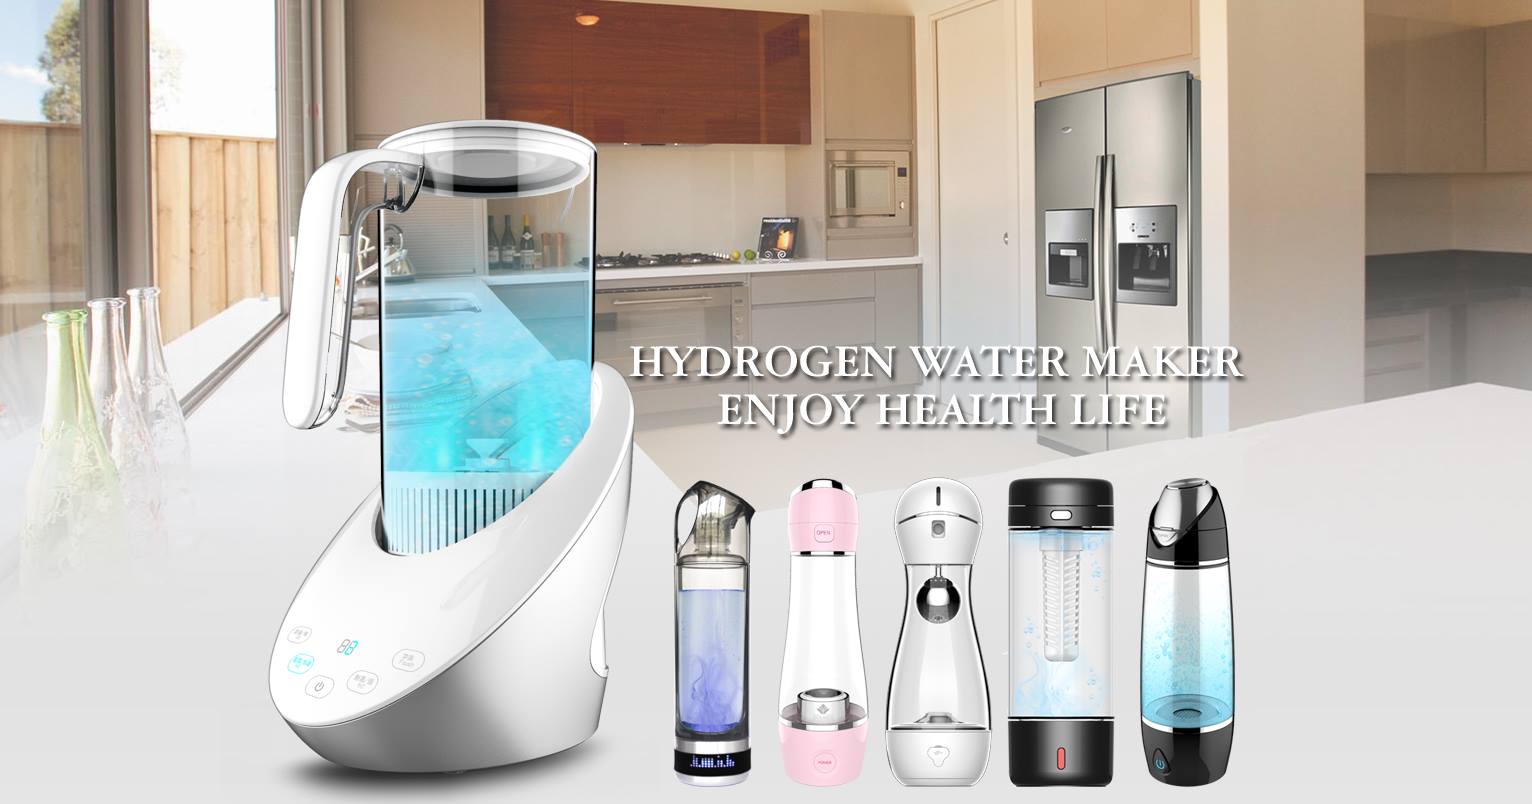 Olansi hydrogen water